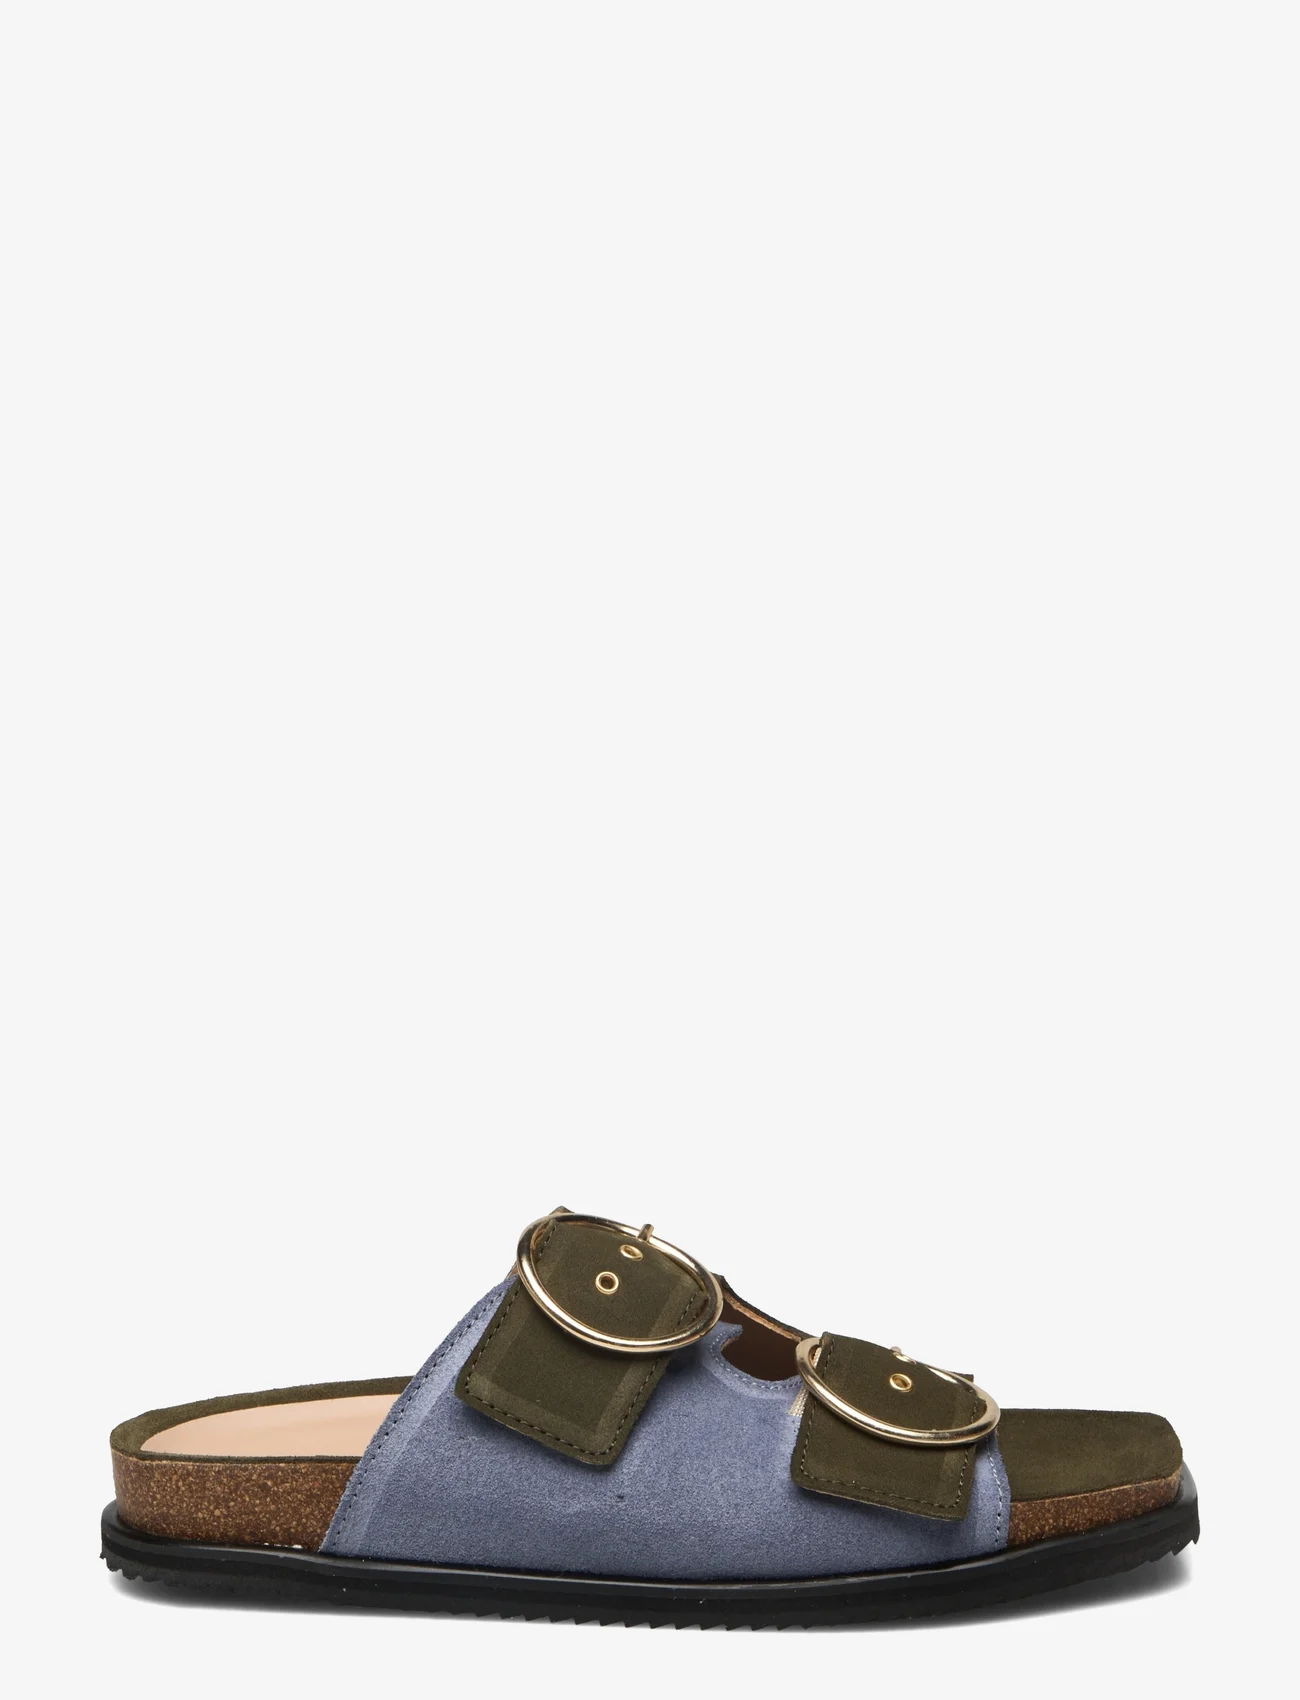 ANGULUS - Sandals - flat - open toe - op - platte sandalen - 2244/2242 light blue/green - 1